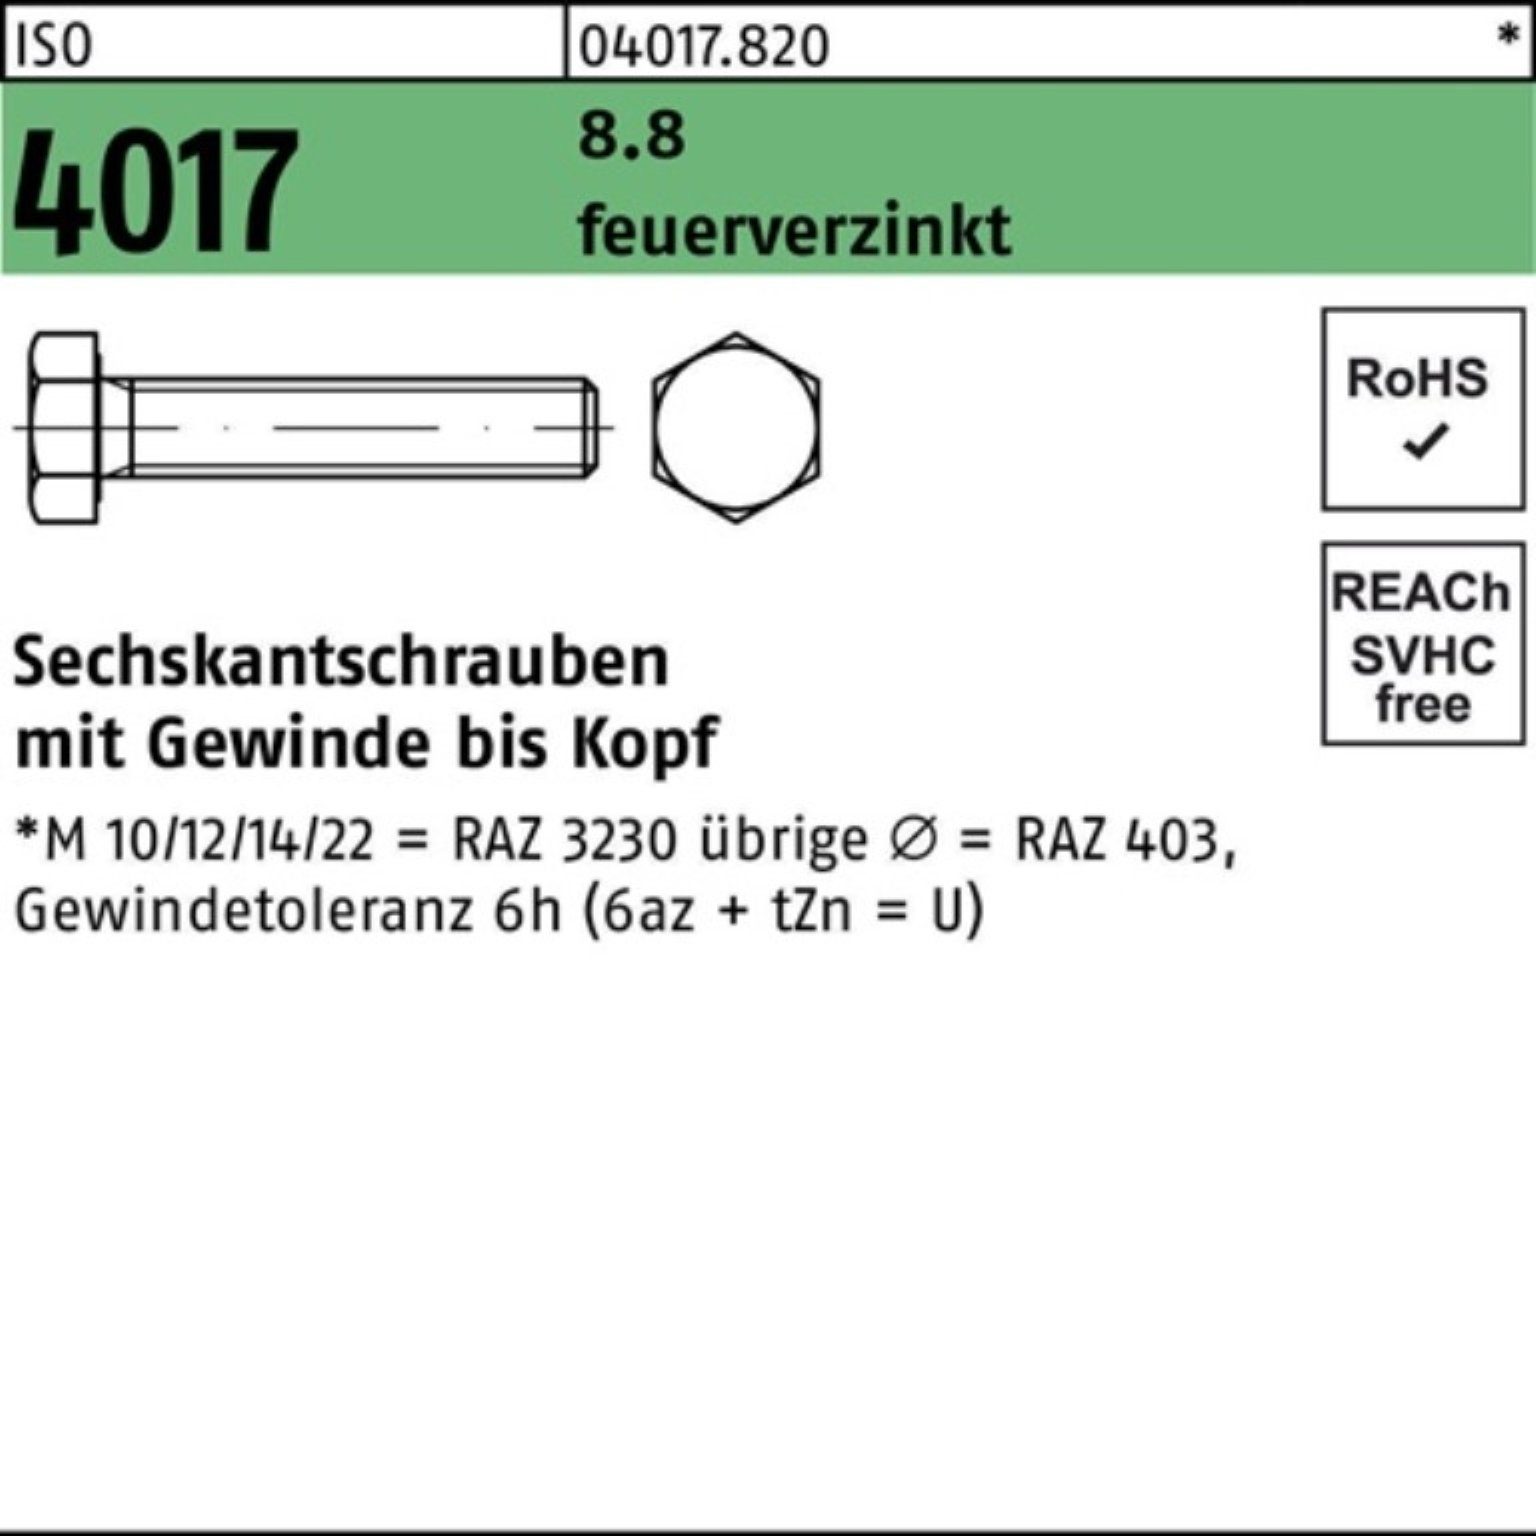 Bufab Sechskantschraube 100er Pack Sechskantschraube ISO 4017 VG M24x 100 8.8 feuerverz. 10 St